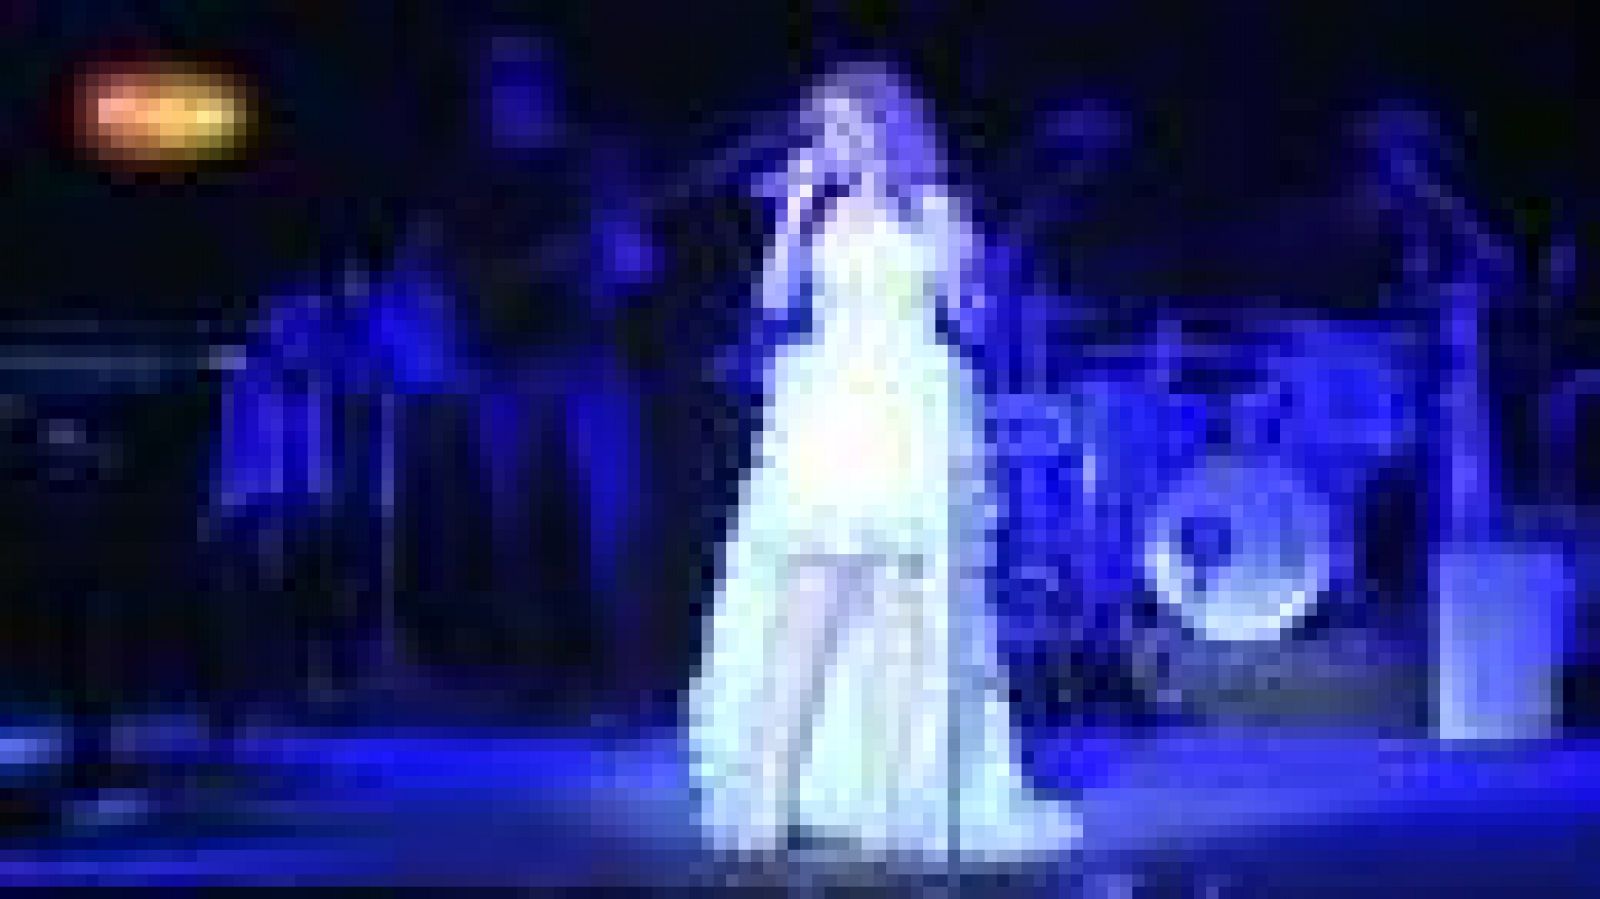 Eurovisión 2012 - Pastora Soler interpreta "Me despido de ti" en el teatro Arteria Coliseum